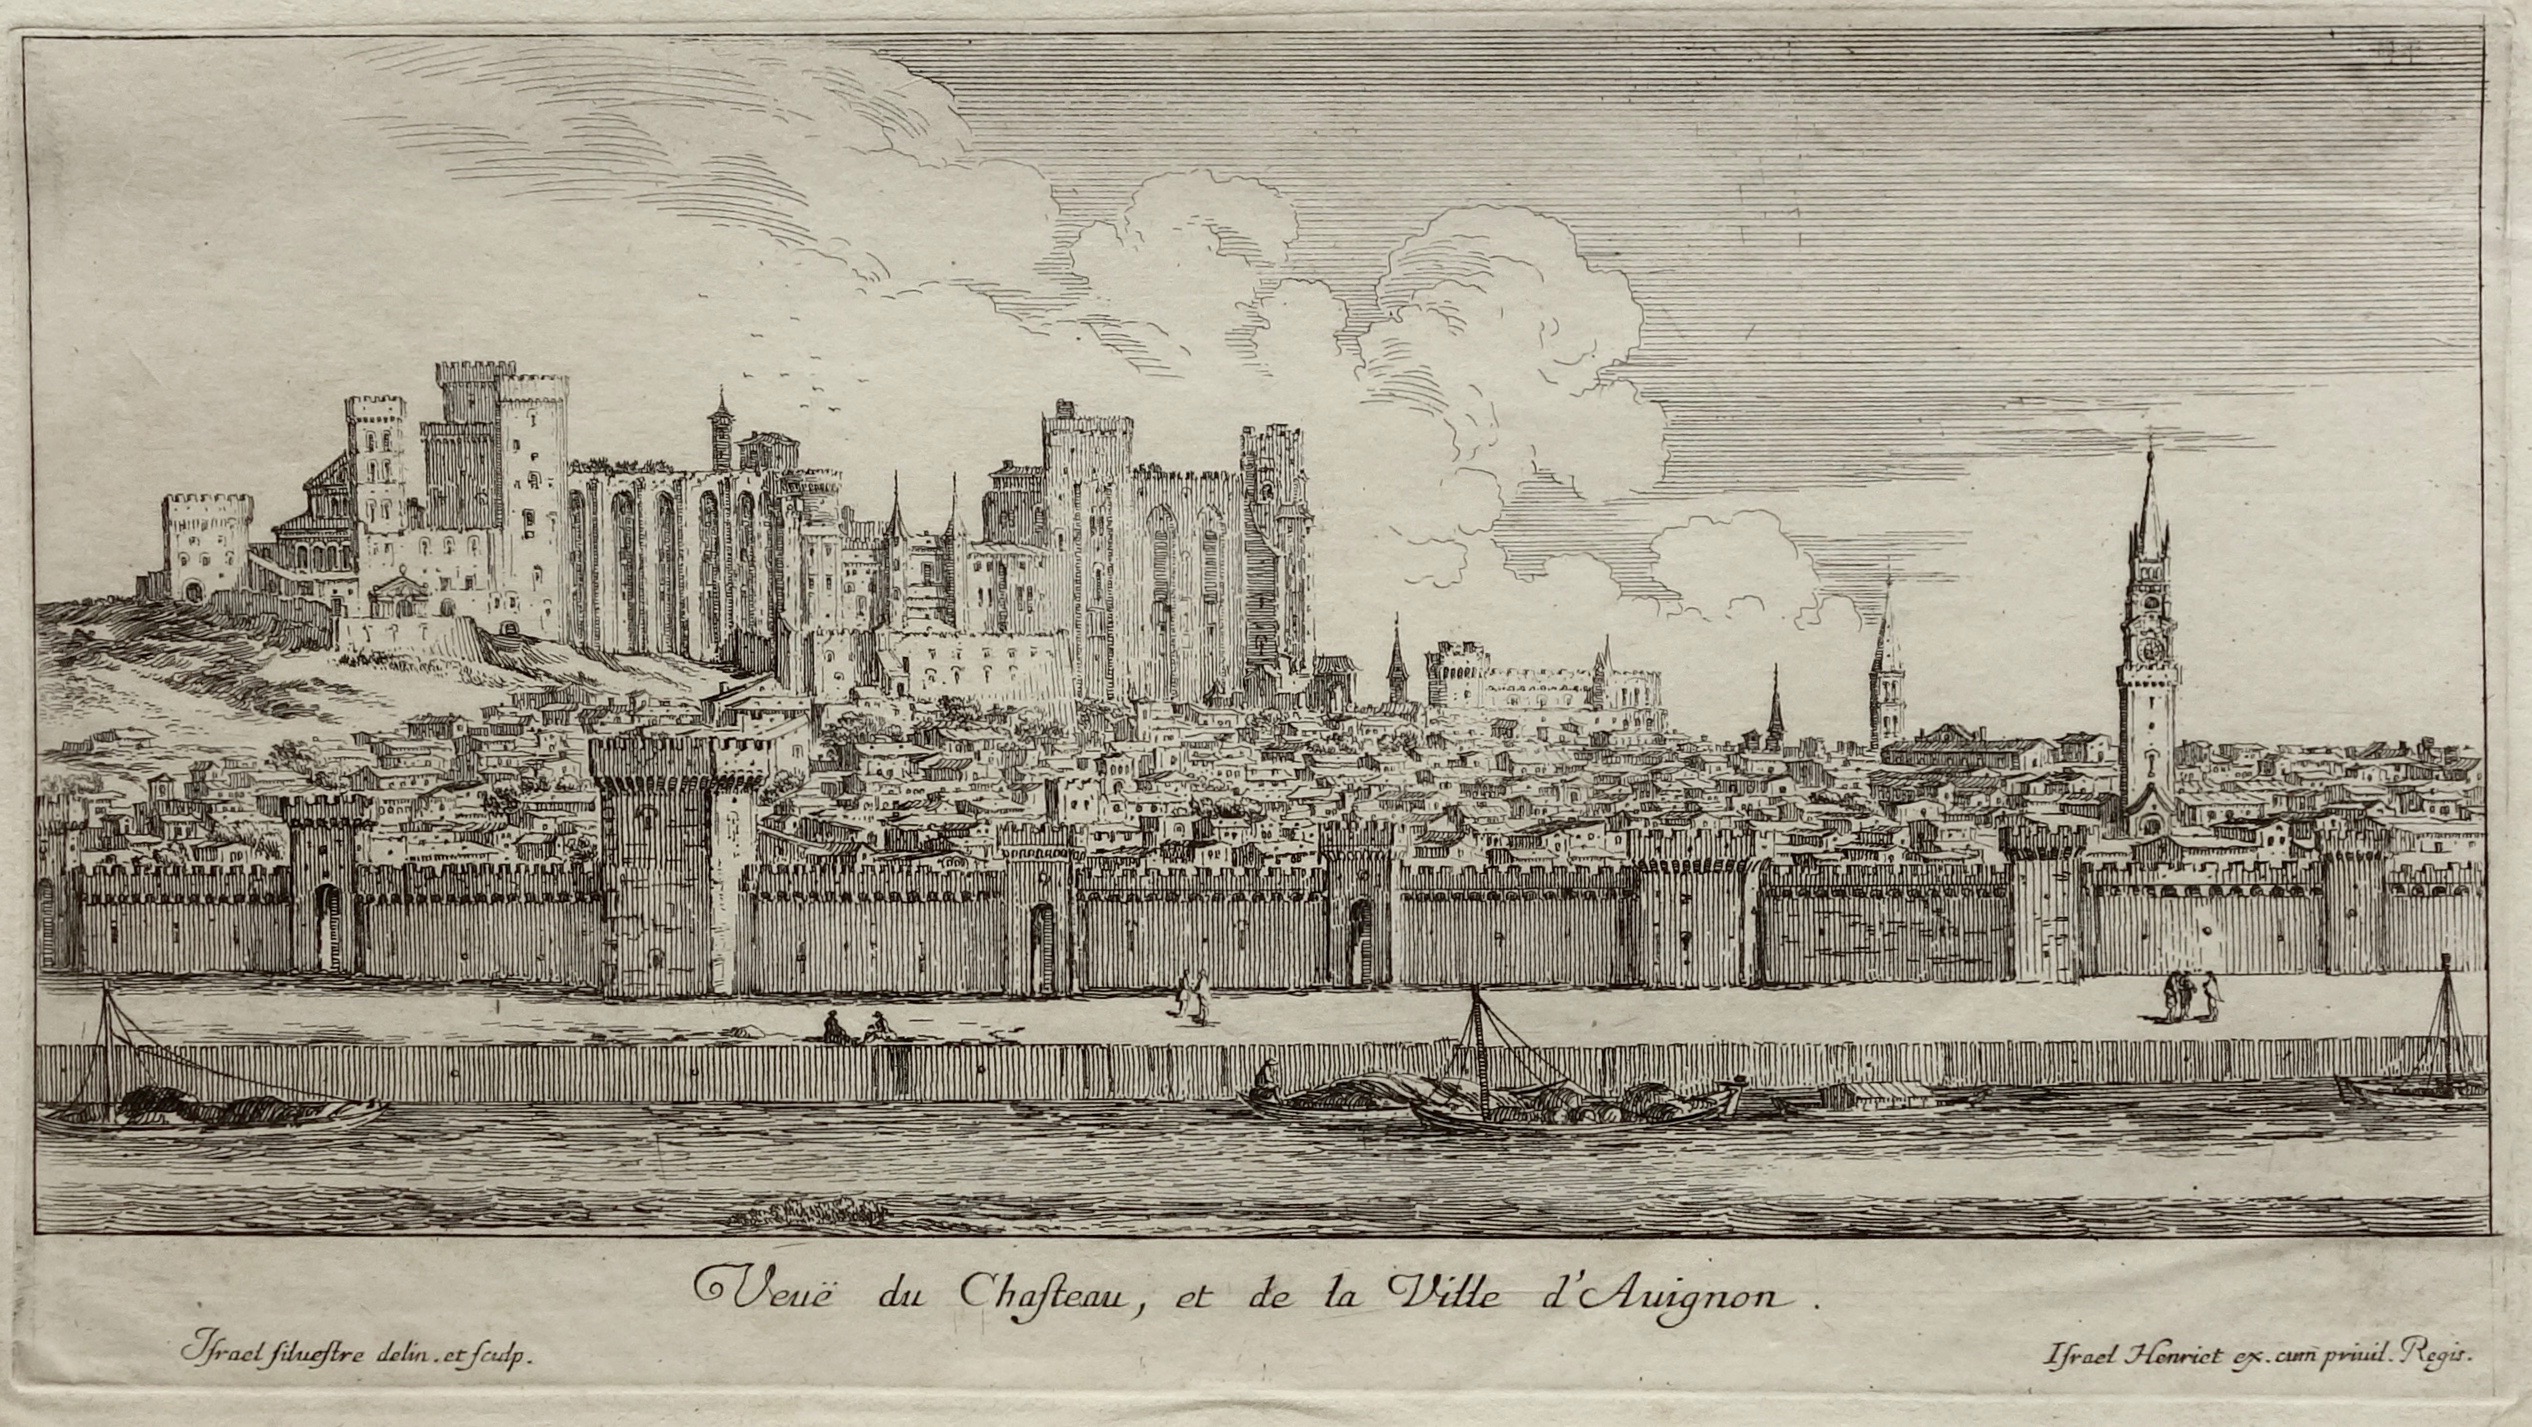 Israël Silvestre : Veuë du Chasteau, et de la Ville d'Avignon.